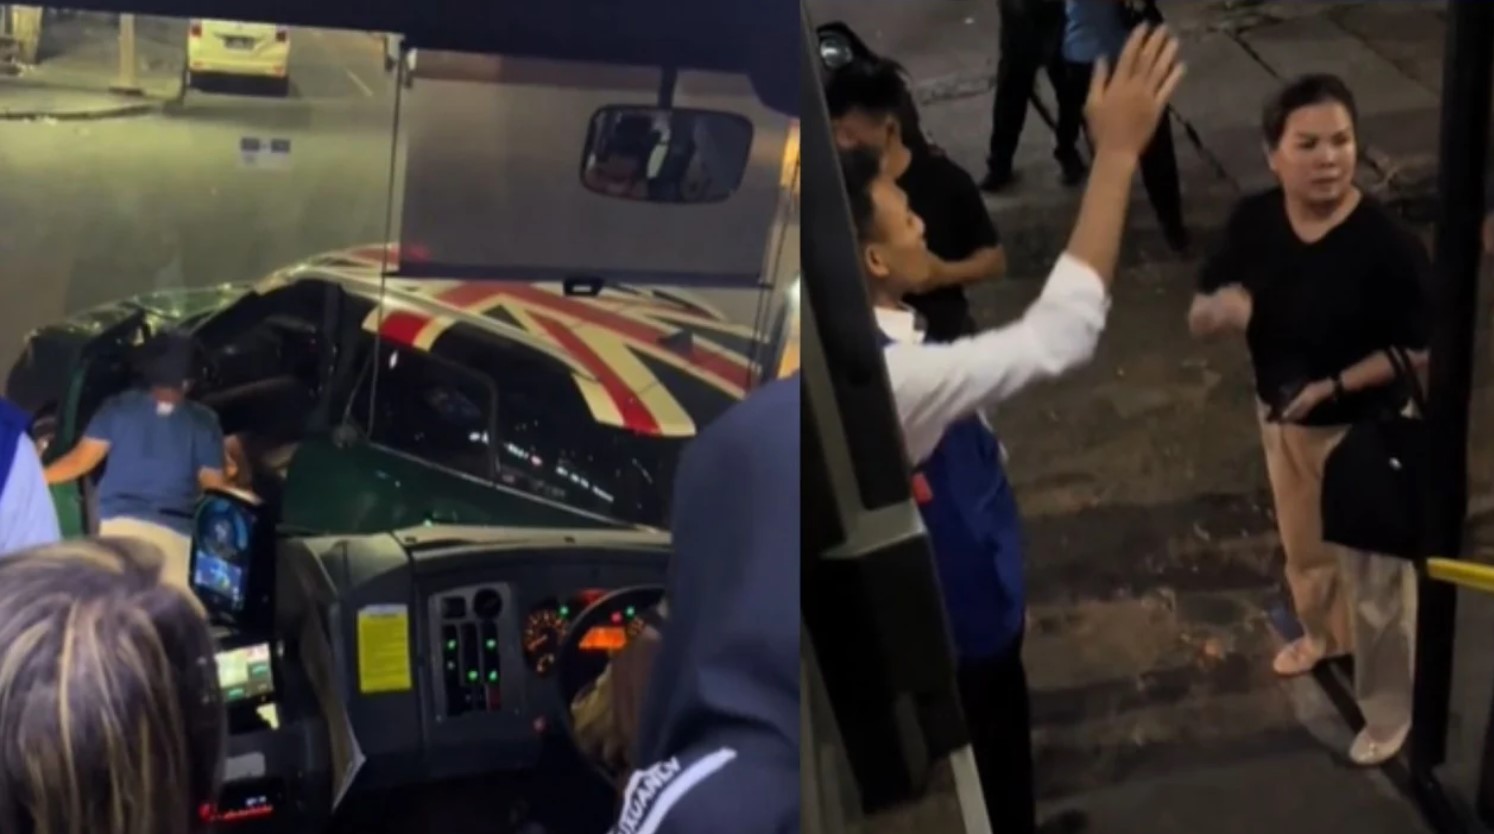 Berhasil Dimediasi Polisi, Ini Kronologi Mini Cooper Adang Transjakarta Minta Tanggung Jawab